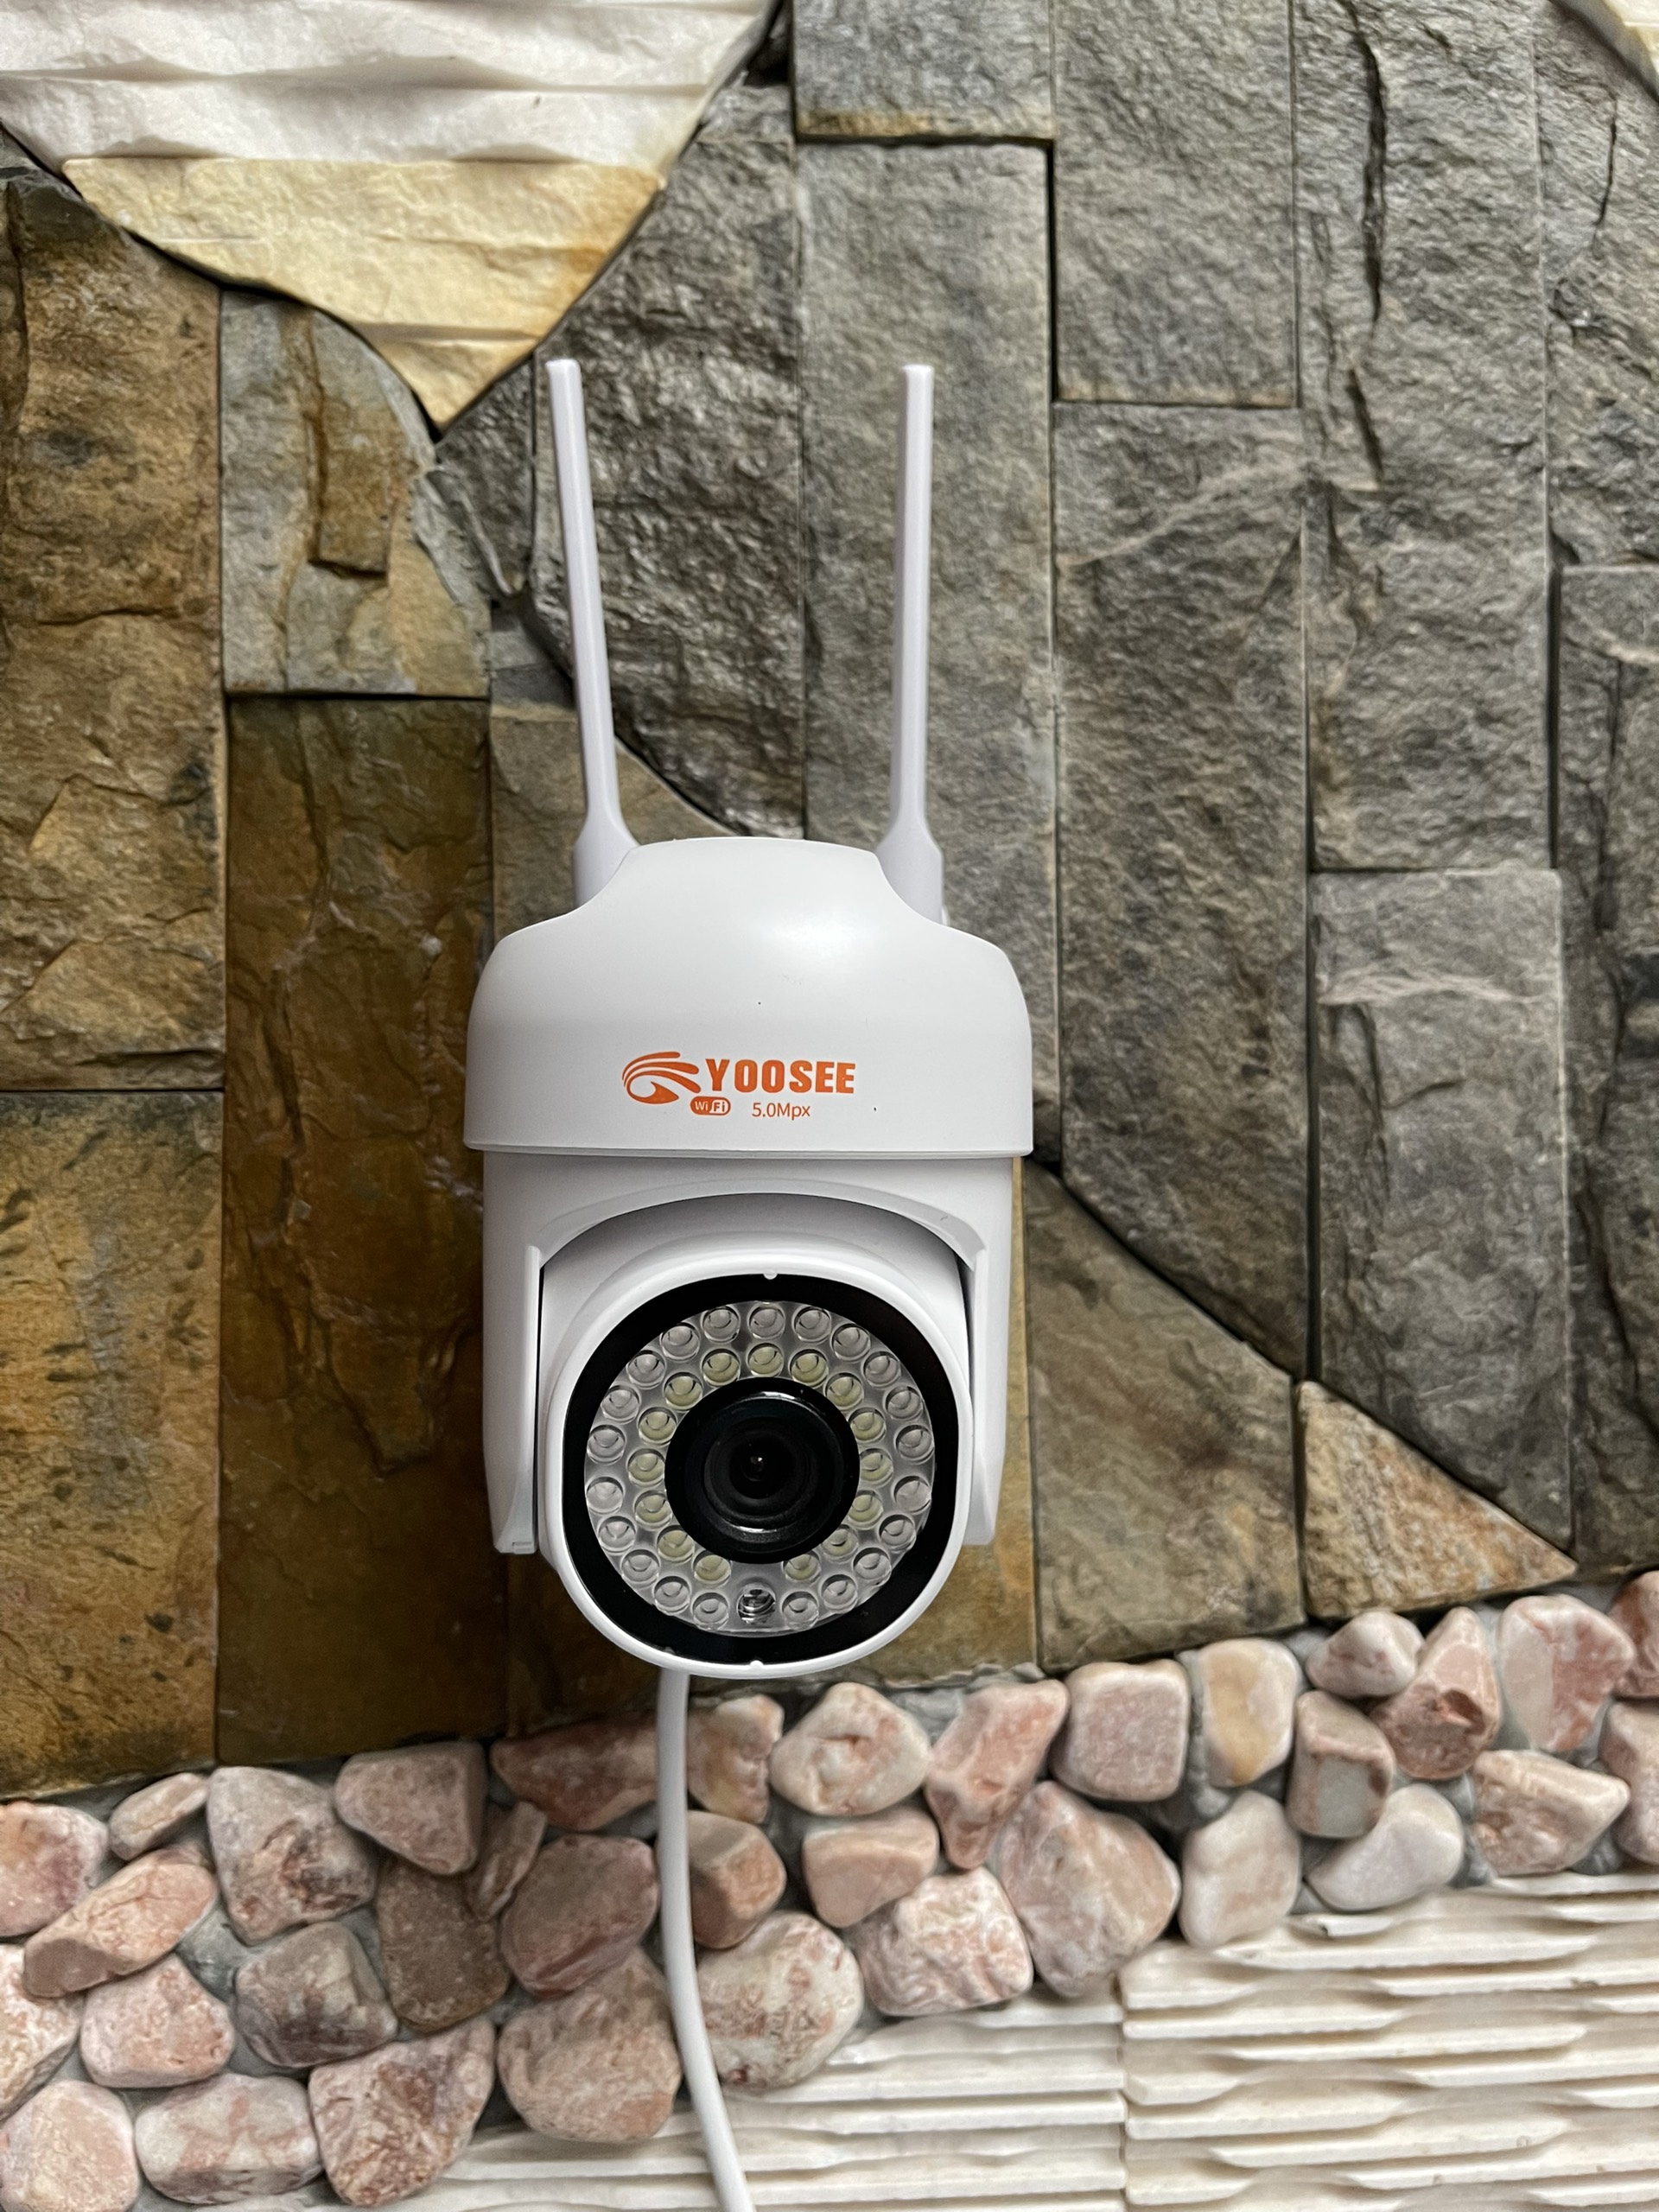 Camera YooSee Wifi PTZmini 36led ngoài trời - xoay 360 độ - xem đêm có màu FullHD 1080 mẫu mới...